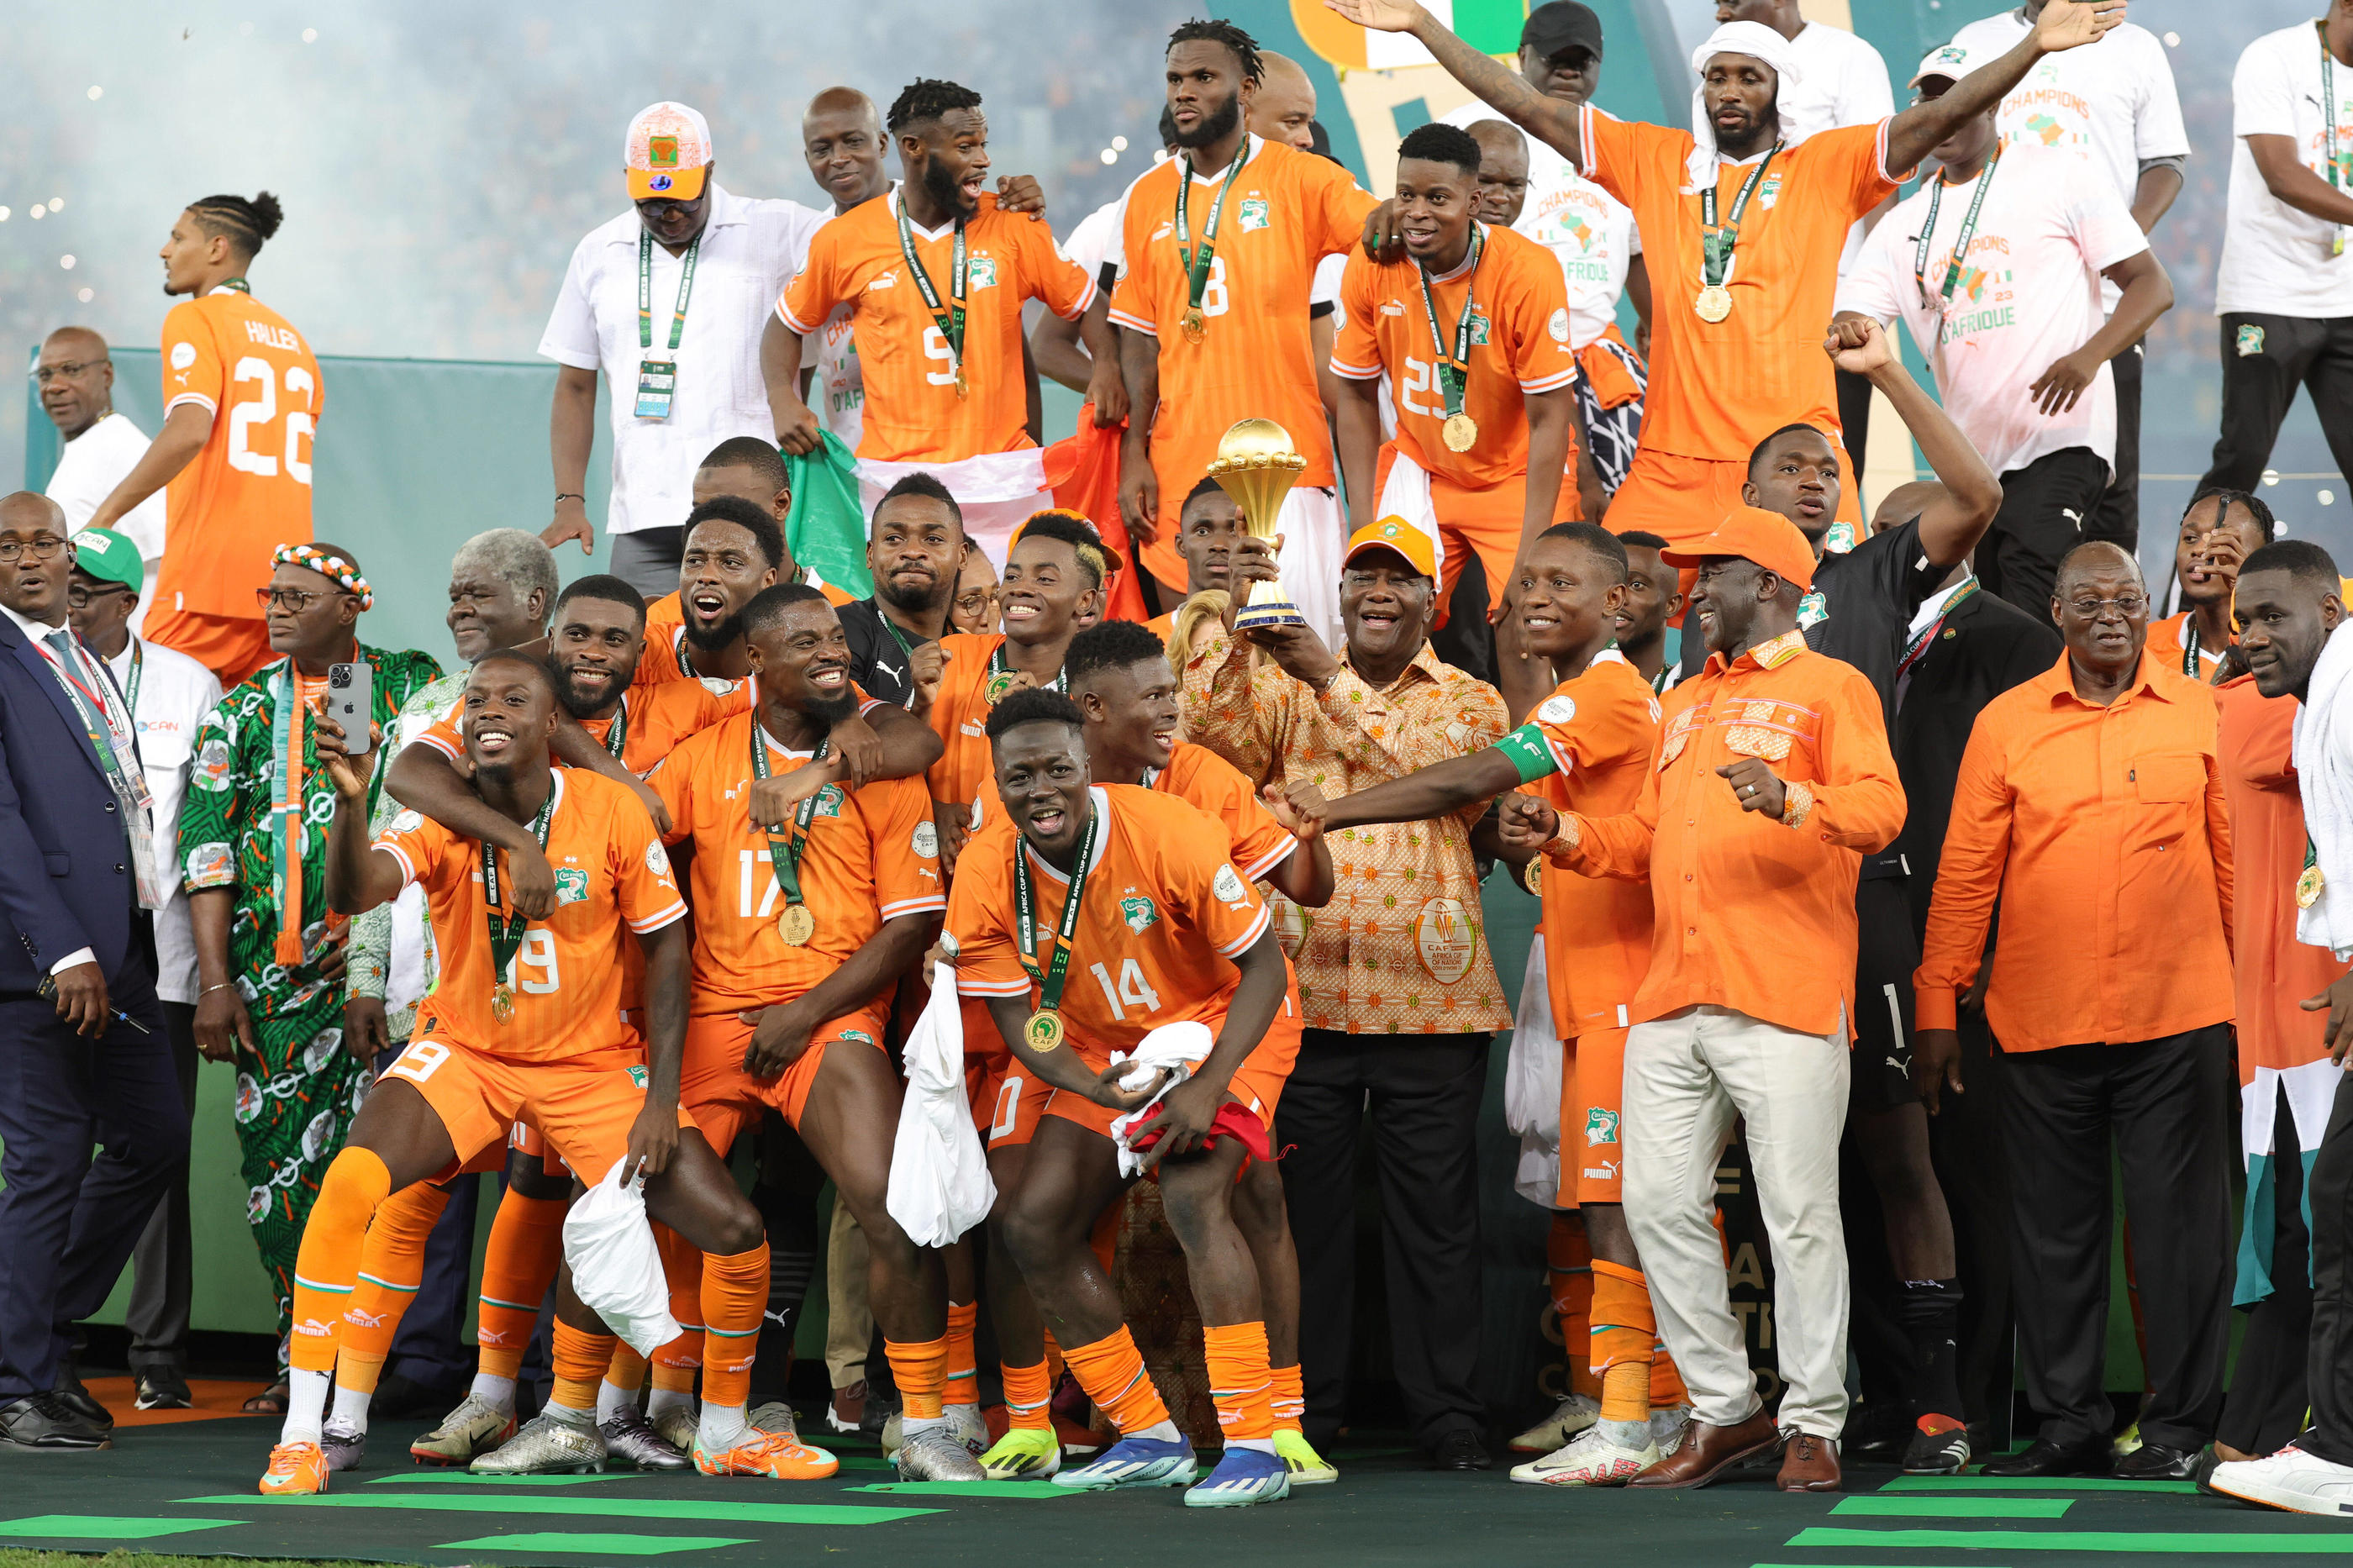 Au terme d'une compétition mouvementée, la Côte d'Ivoire a soulevé la CAN pour la 3e fois, à domicile qui plus est. Icon sport/Djaffar Ladjal